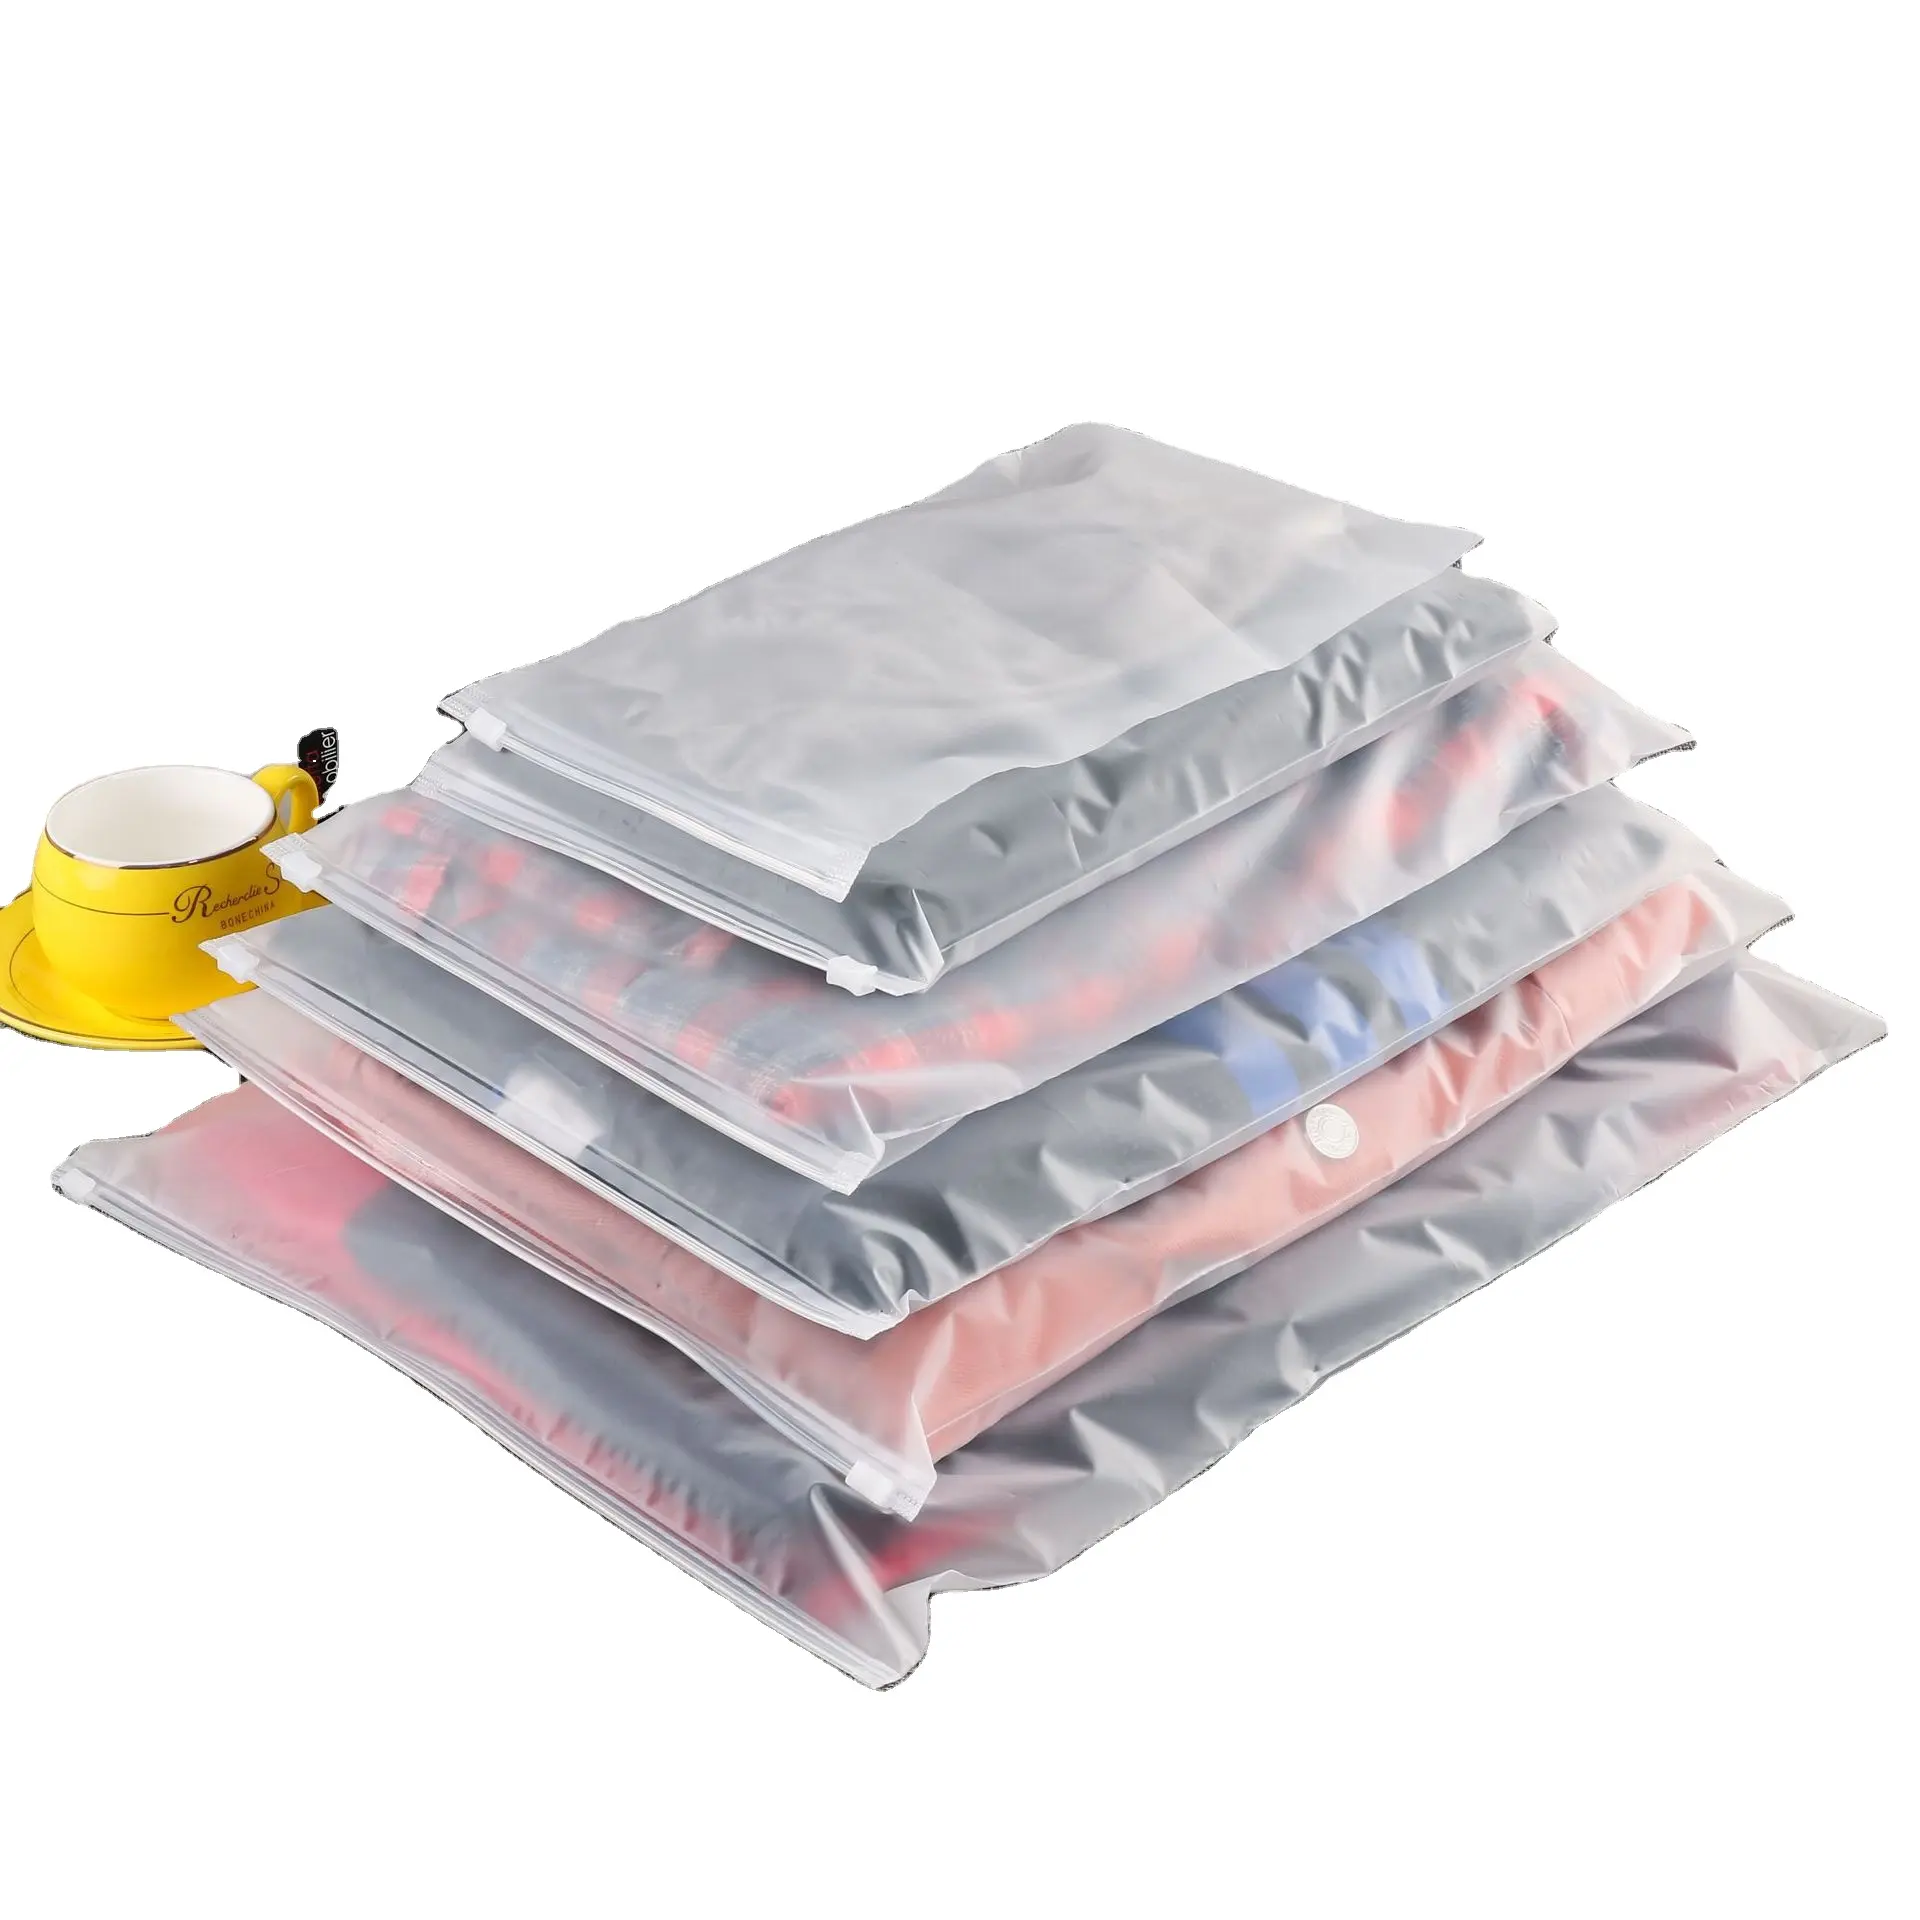 Nuevo material transparente y esmerilado tamaño completo venta al por mayor bolsas impermeables con cierre de cremallera para varios tipos de ropa